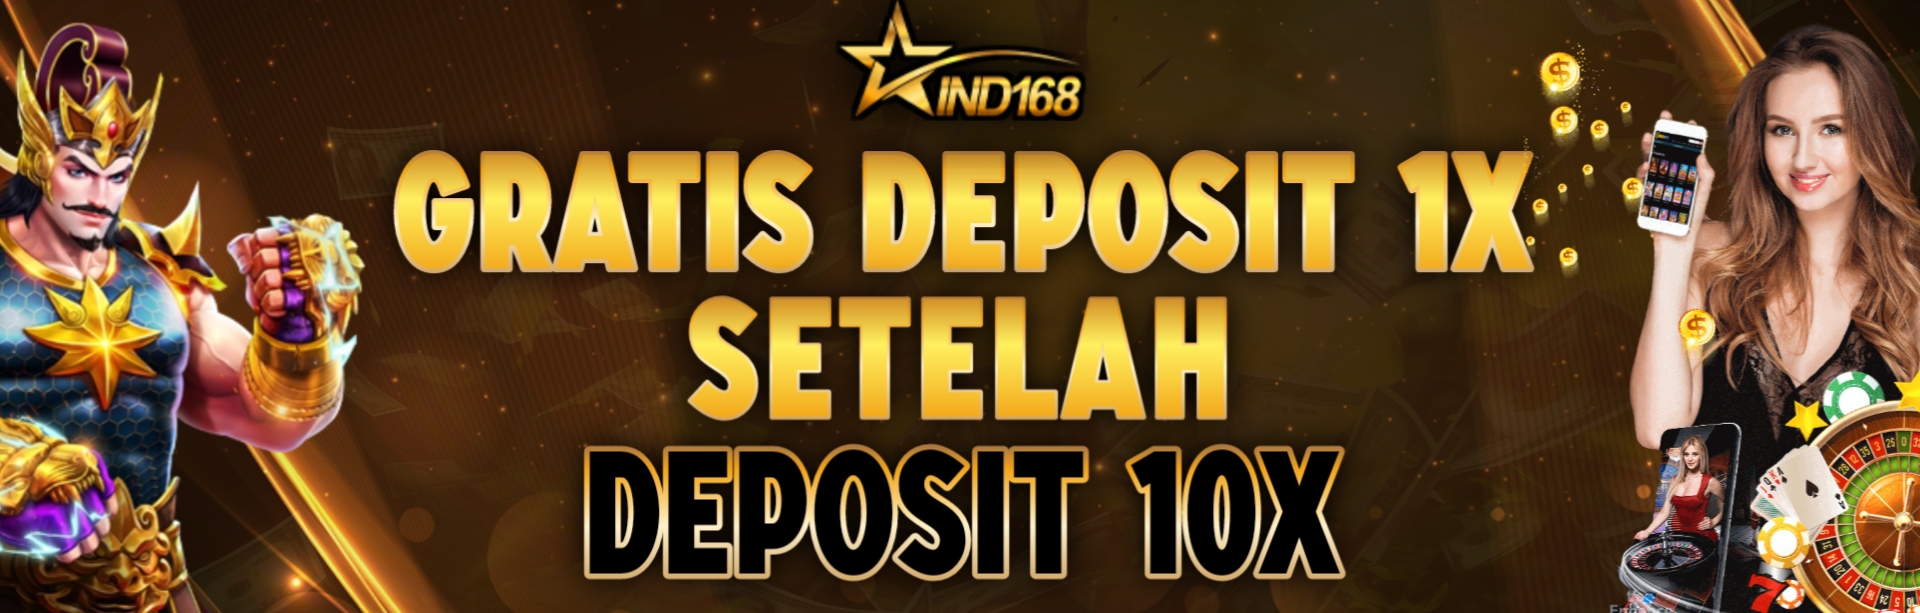 deposit 10x free 1x